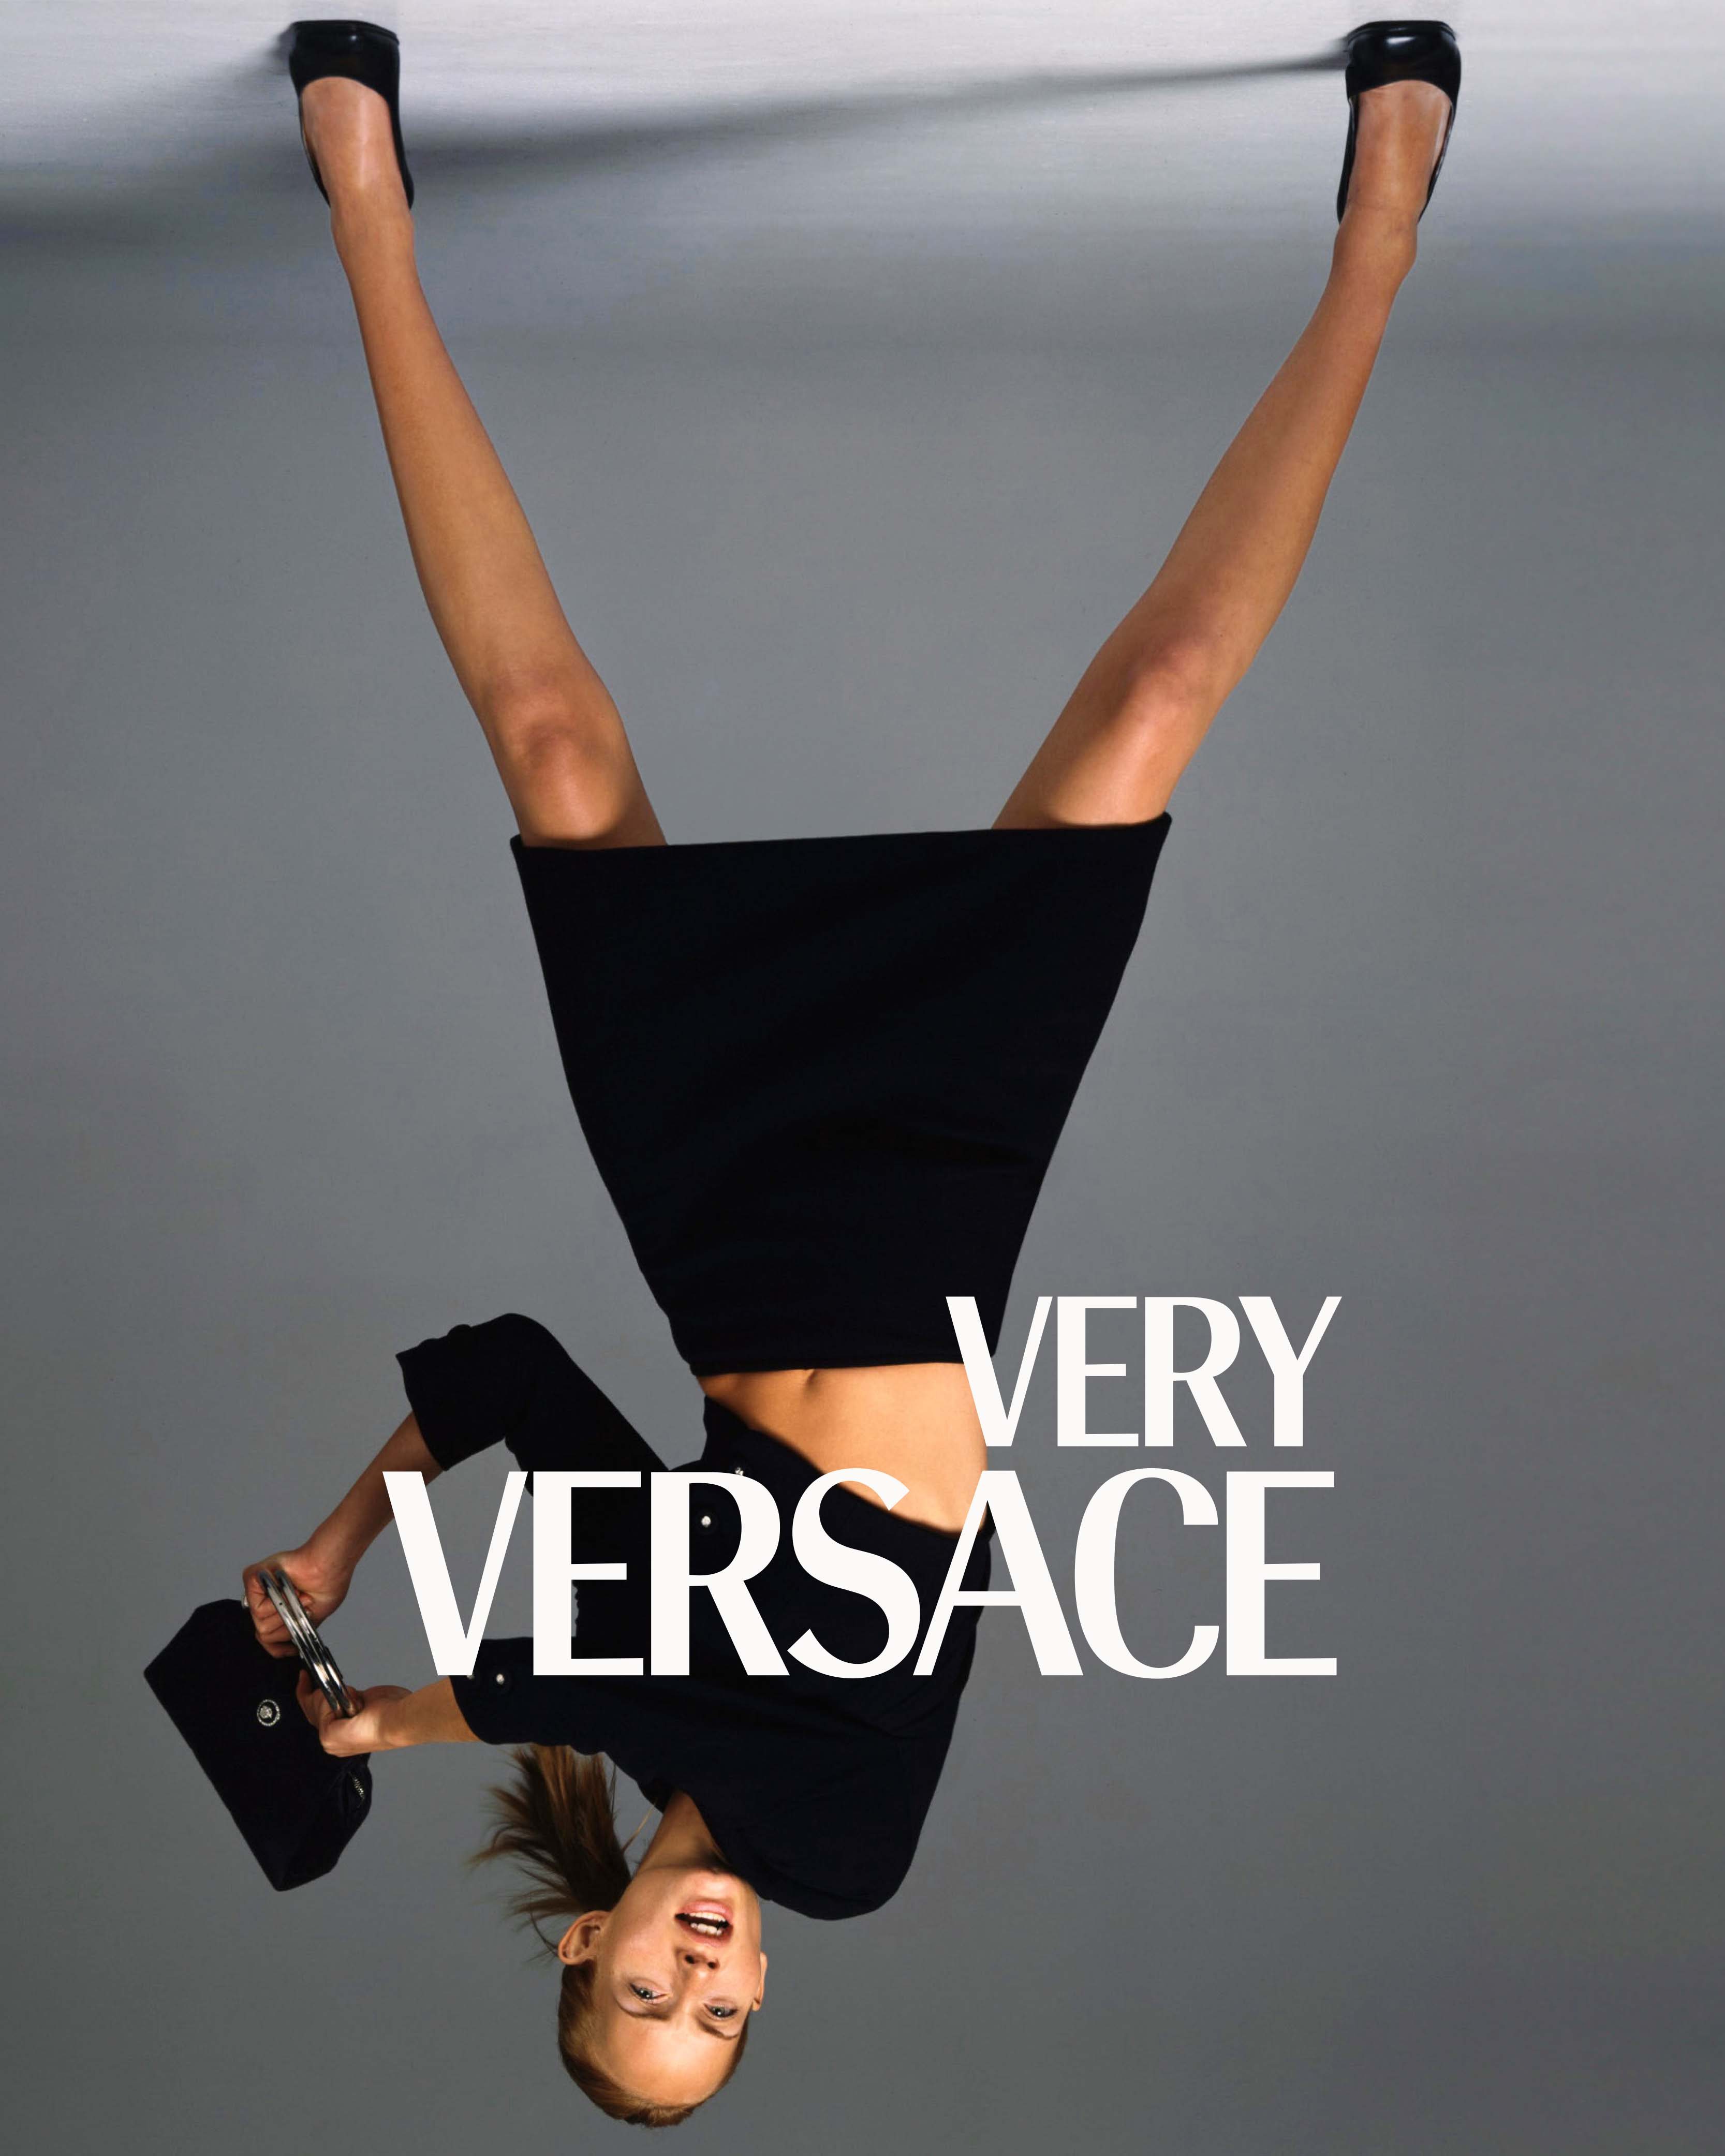 Versace lance un challenge décalé sur Instagram